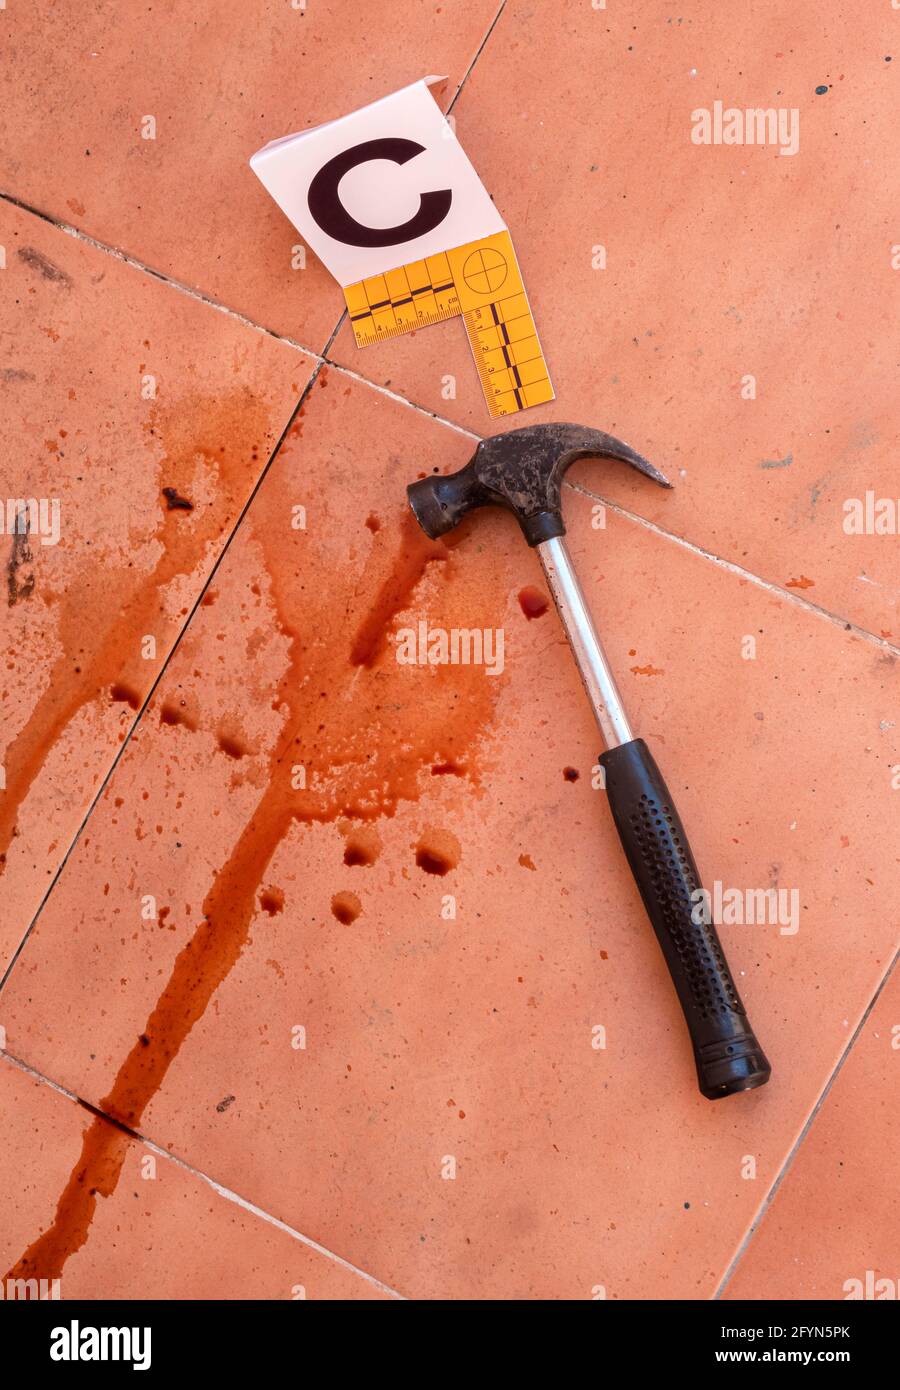 Martello sanguinoso sul terreno segnato con numero, scena del crimine, immagine concettuale Foto Stock